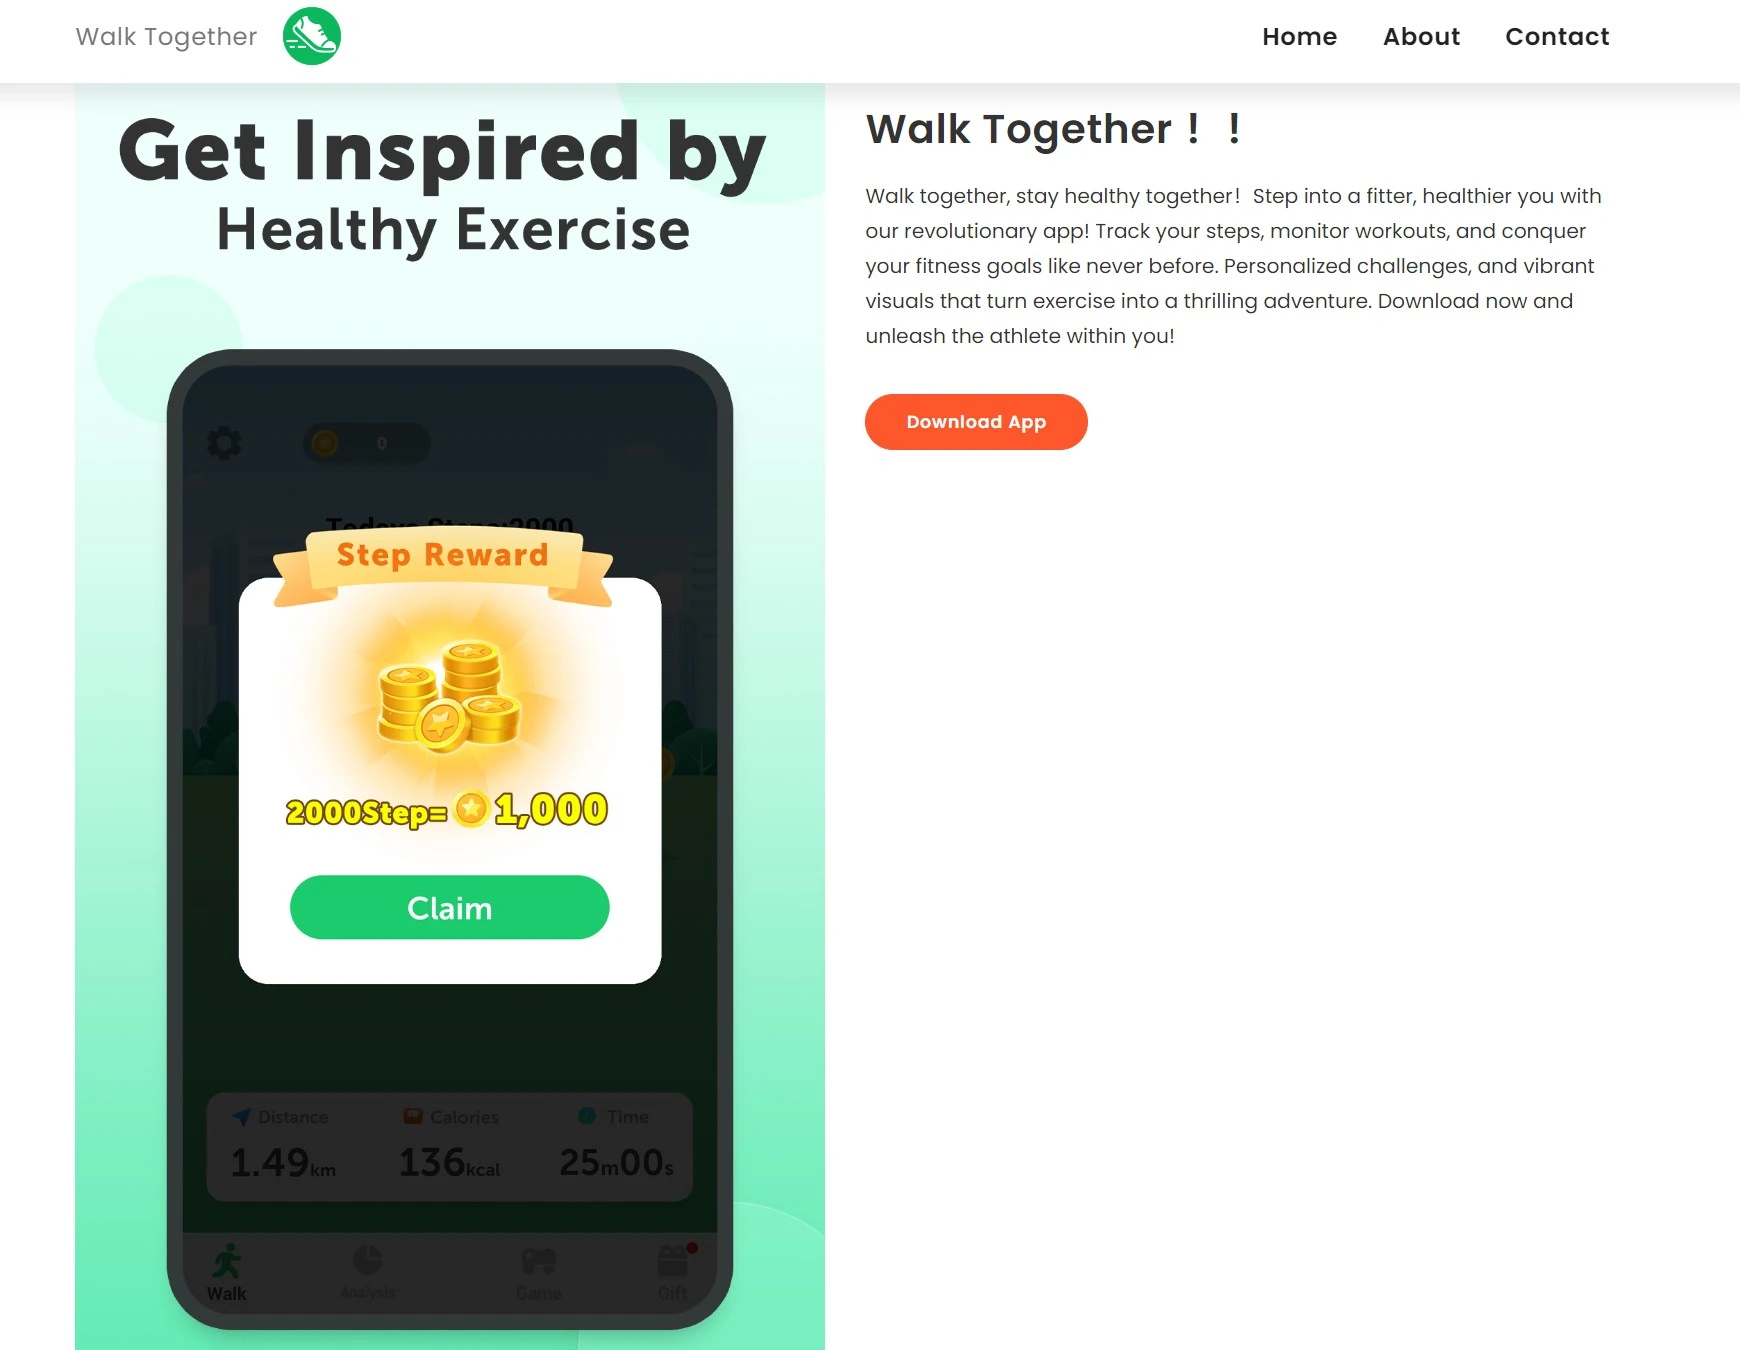 Описание проекта на официальном сайте Walk Together 